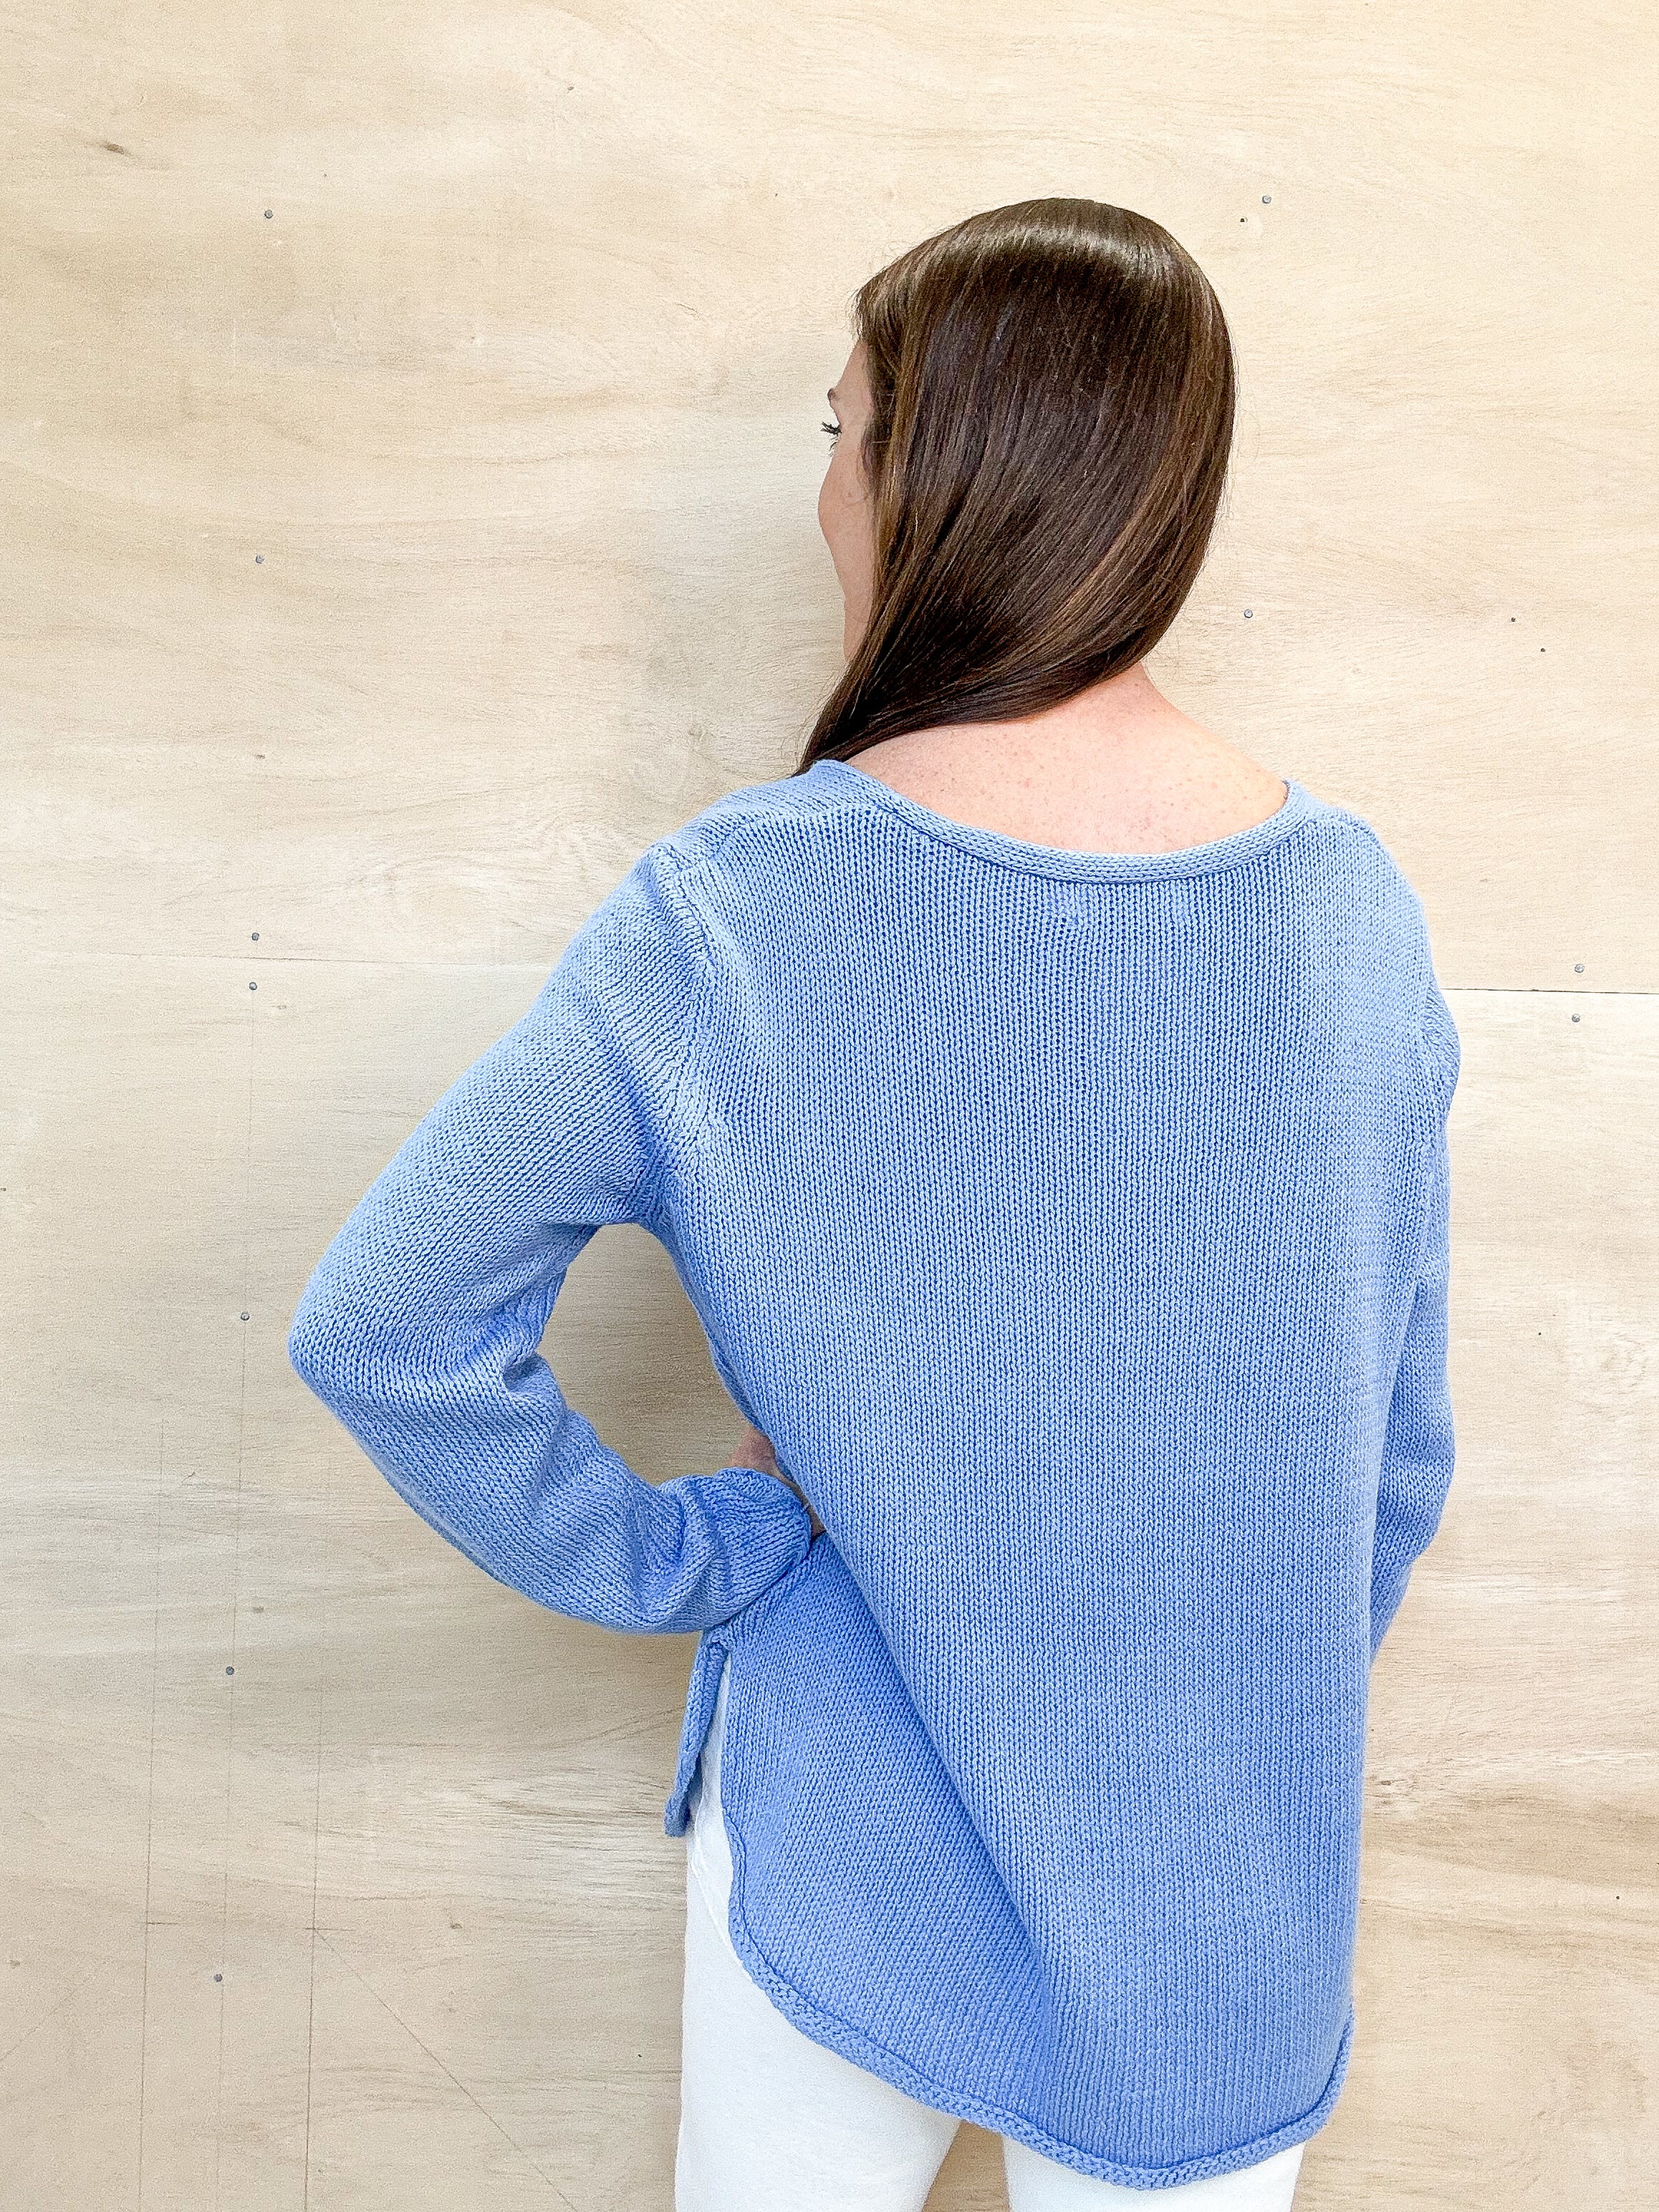 blue beach sweater, round neckline, white text, lightweight sweater